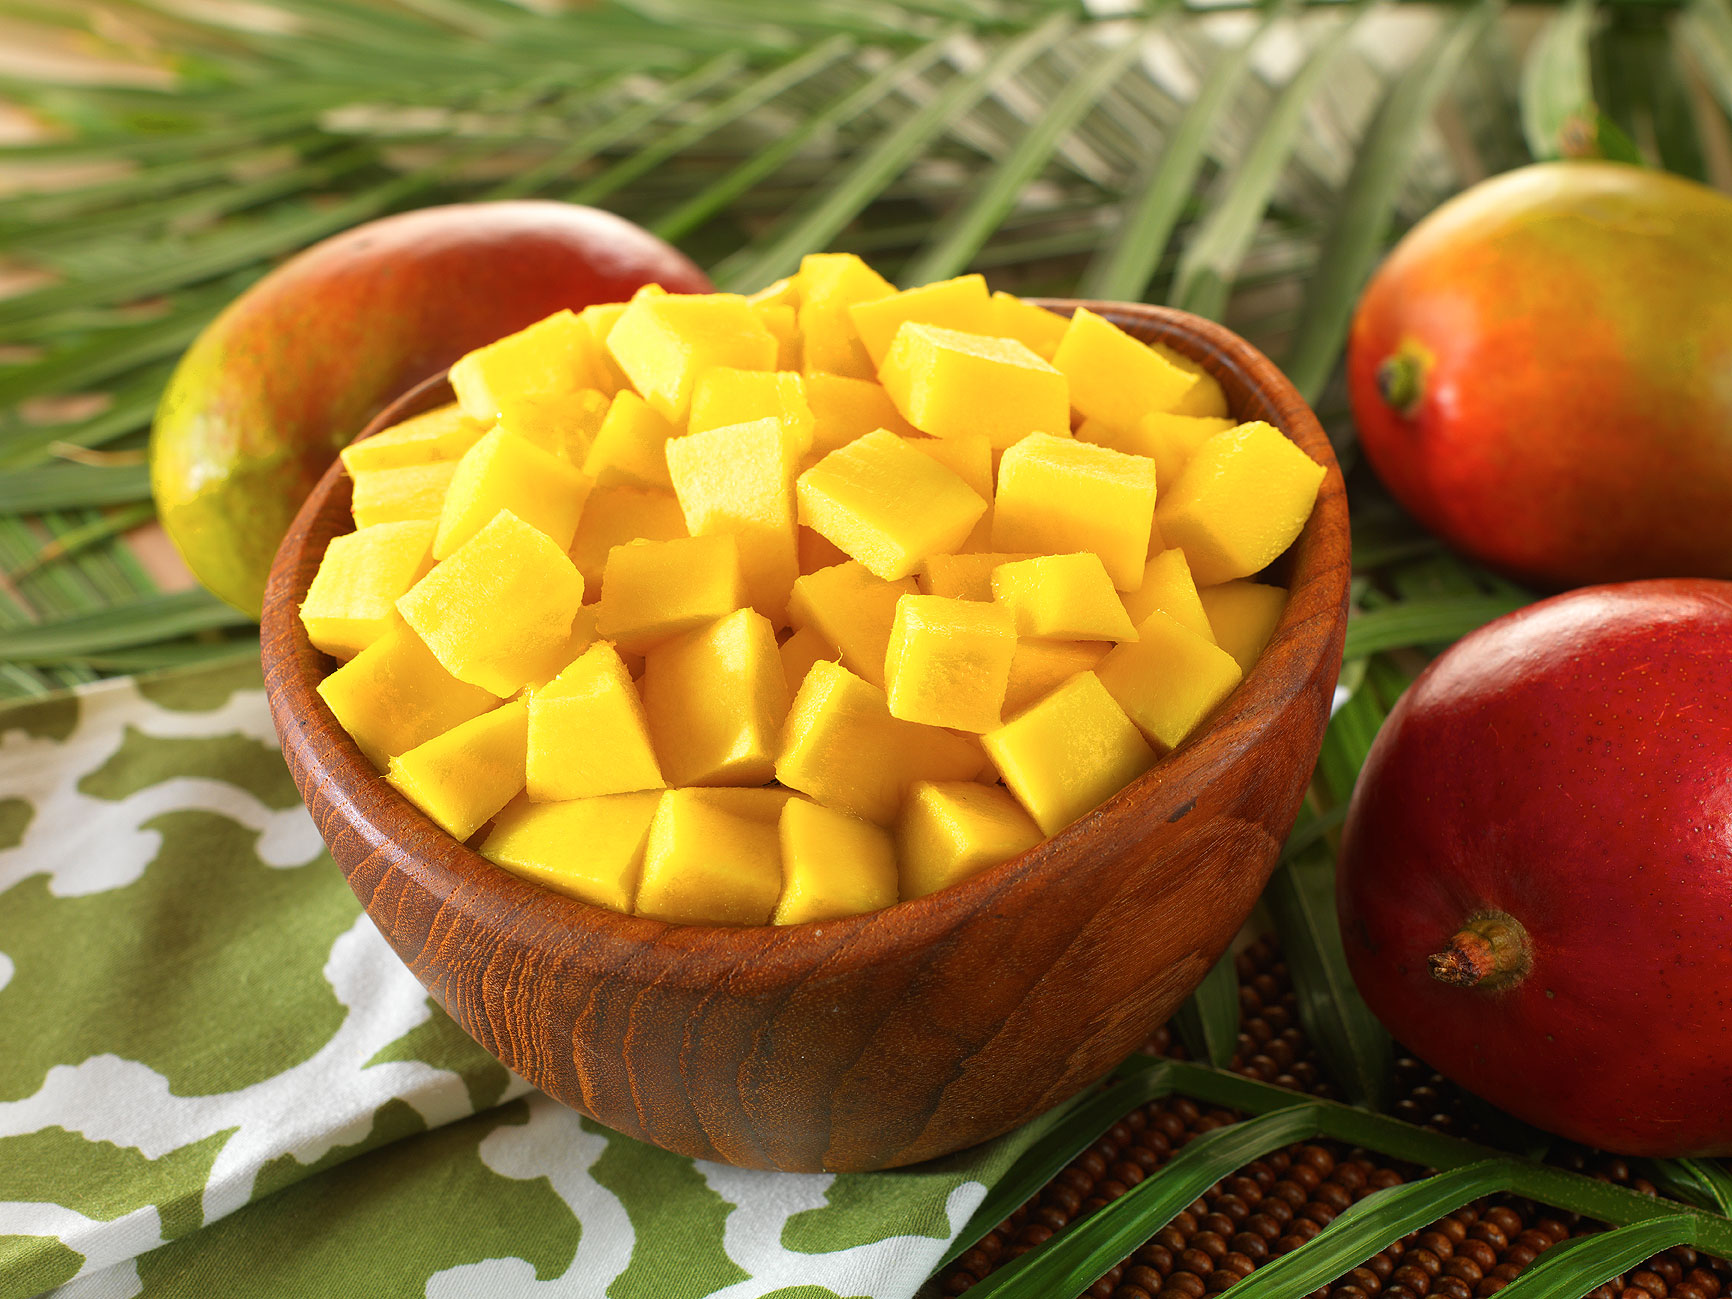 Как правильно порезать и подать манго?